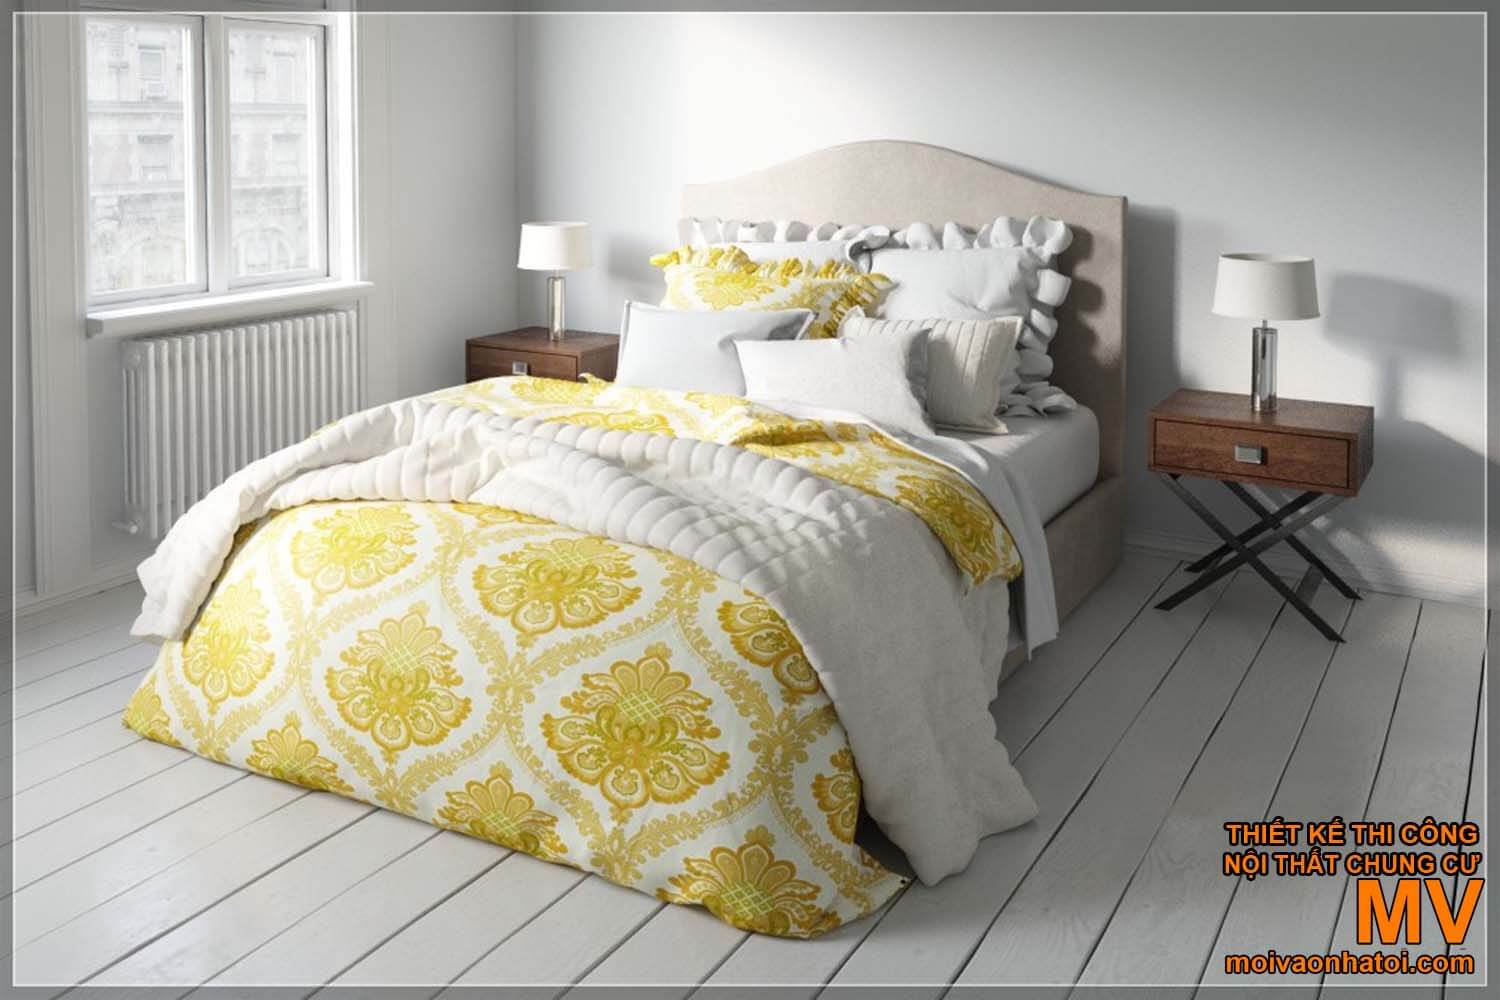 Design ložnice - zdobené skandinávské postele